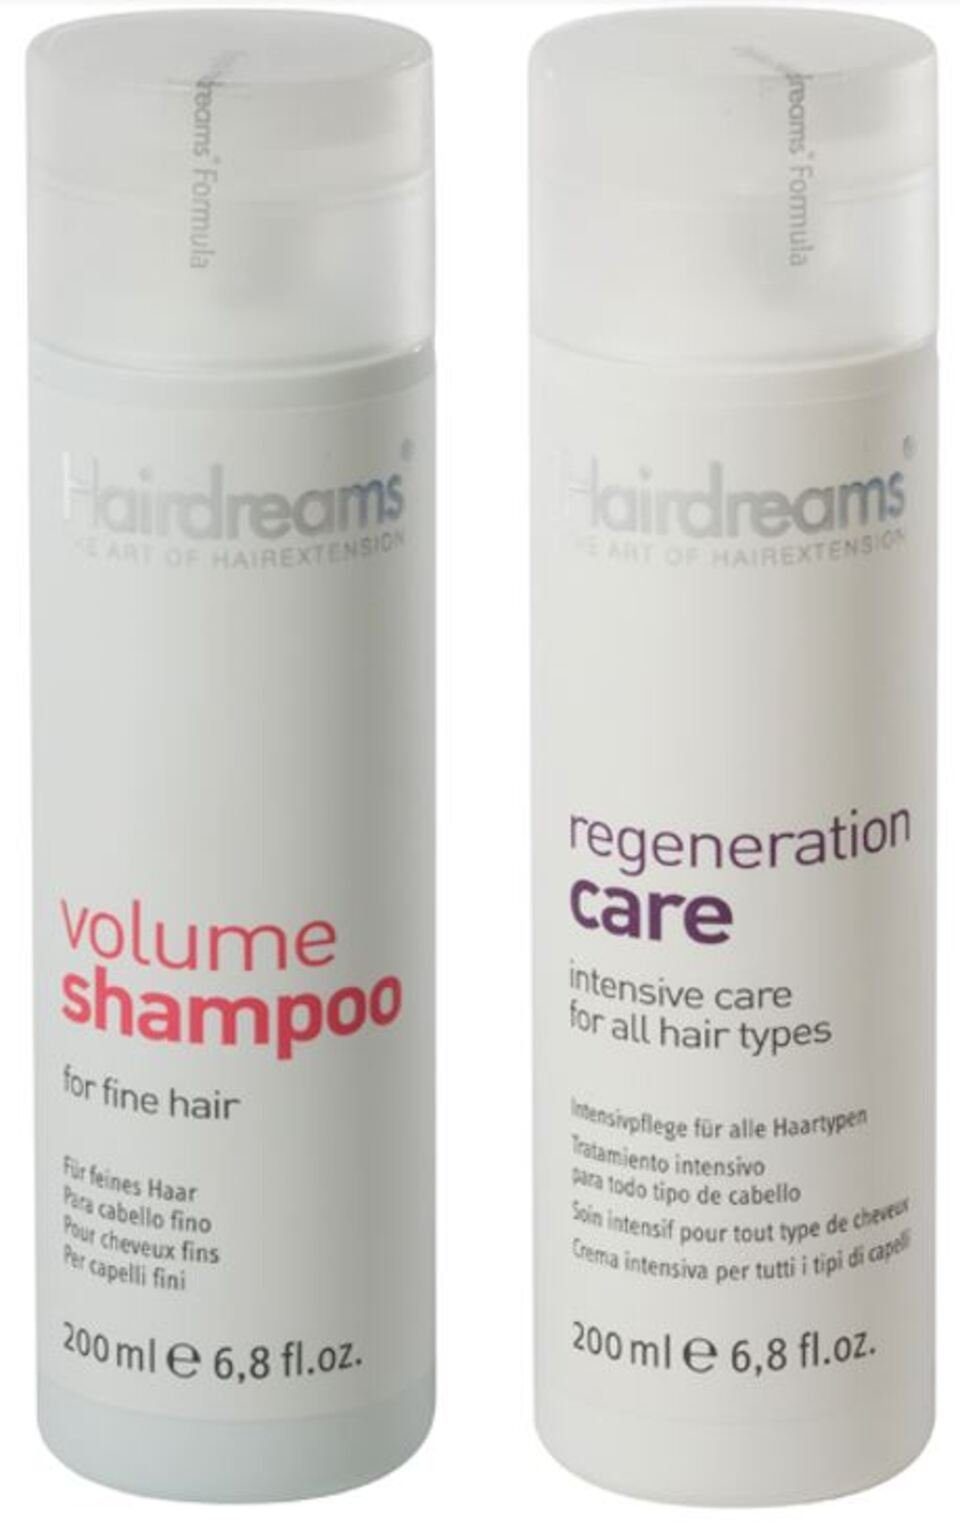 Echthaarverlängerungen Haare mit Care, Volumen Shampoo Regeneration Hairdreams Haarpflege-Set 2-tlg., für + Set,